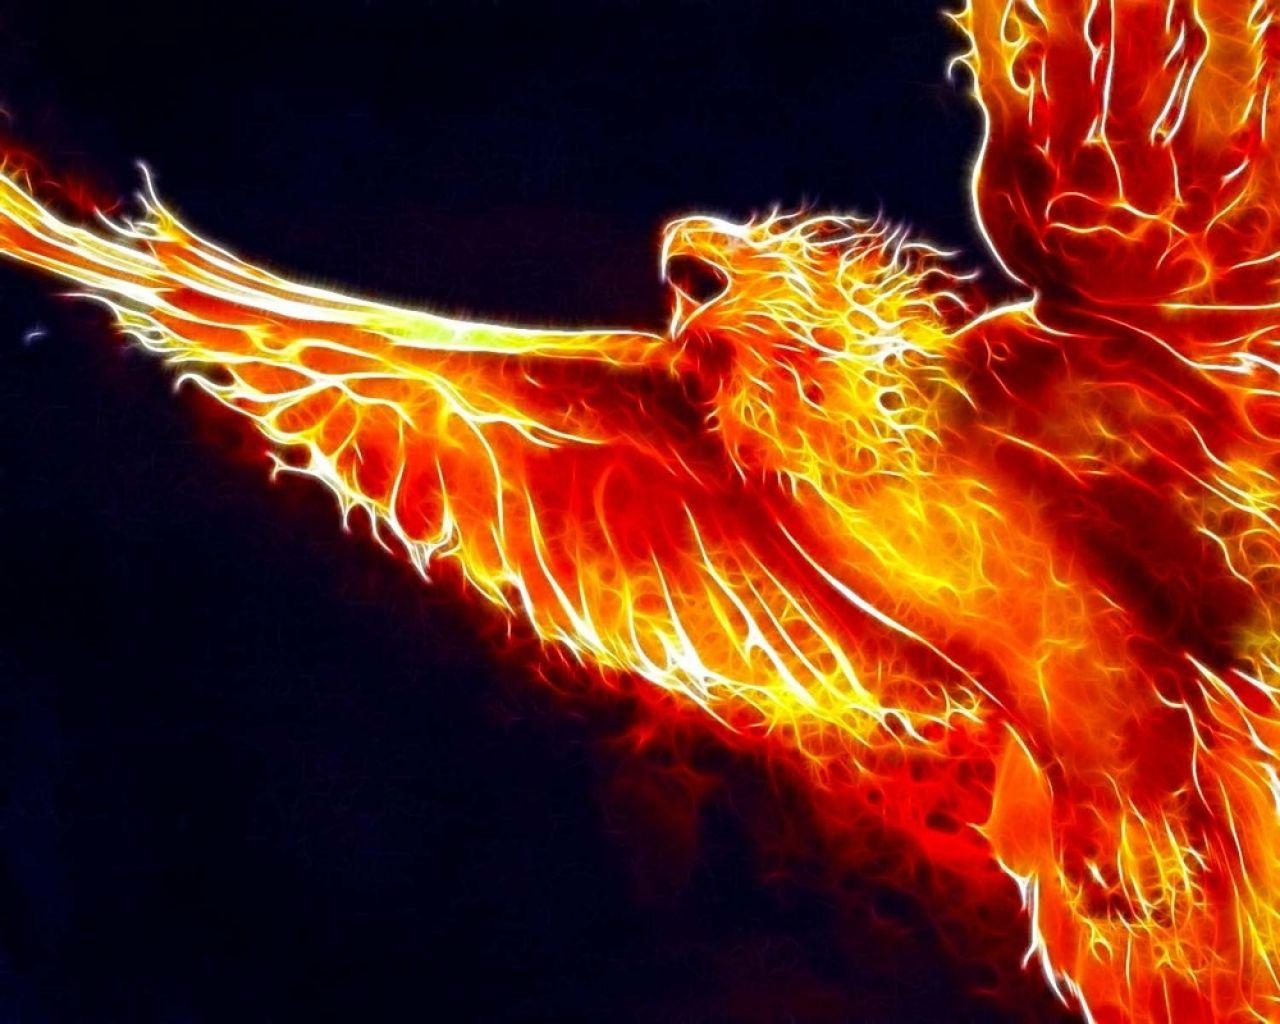 4K Phoenix Bird Wallpapers - Top Free 4K Phoenix Bird Backgrounds ...